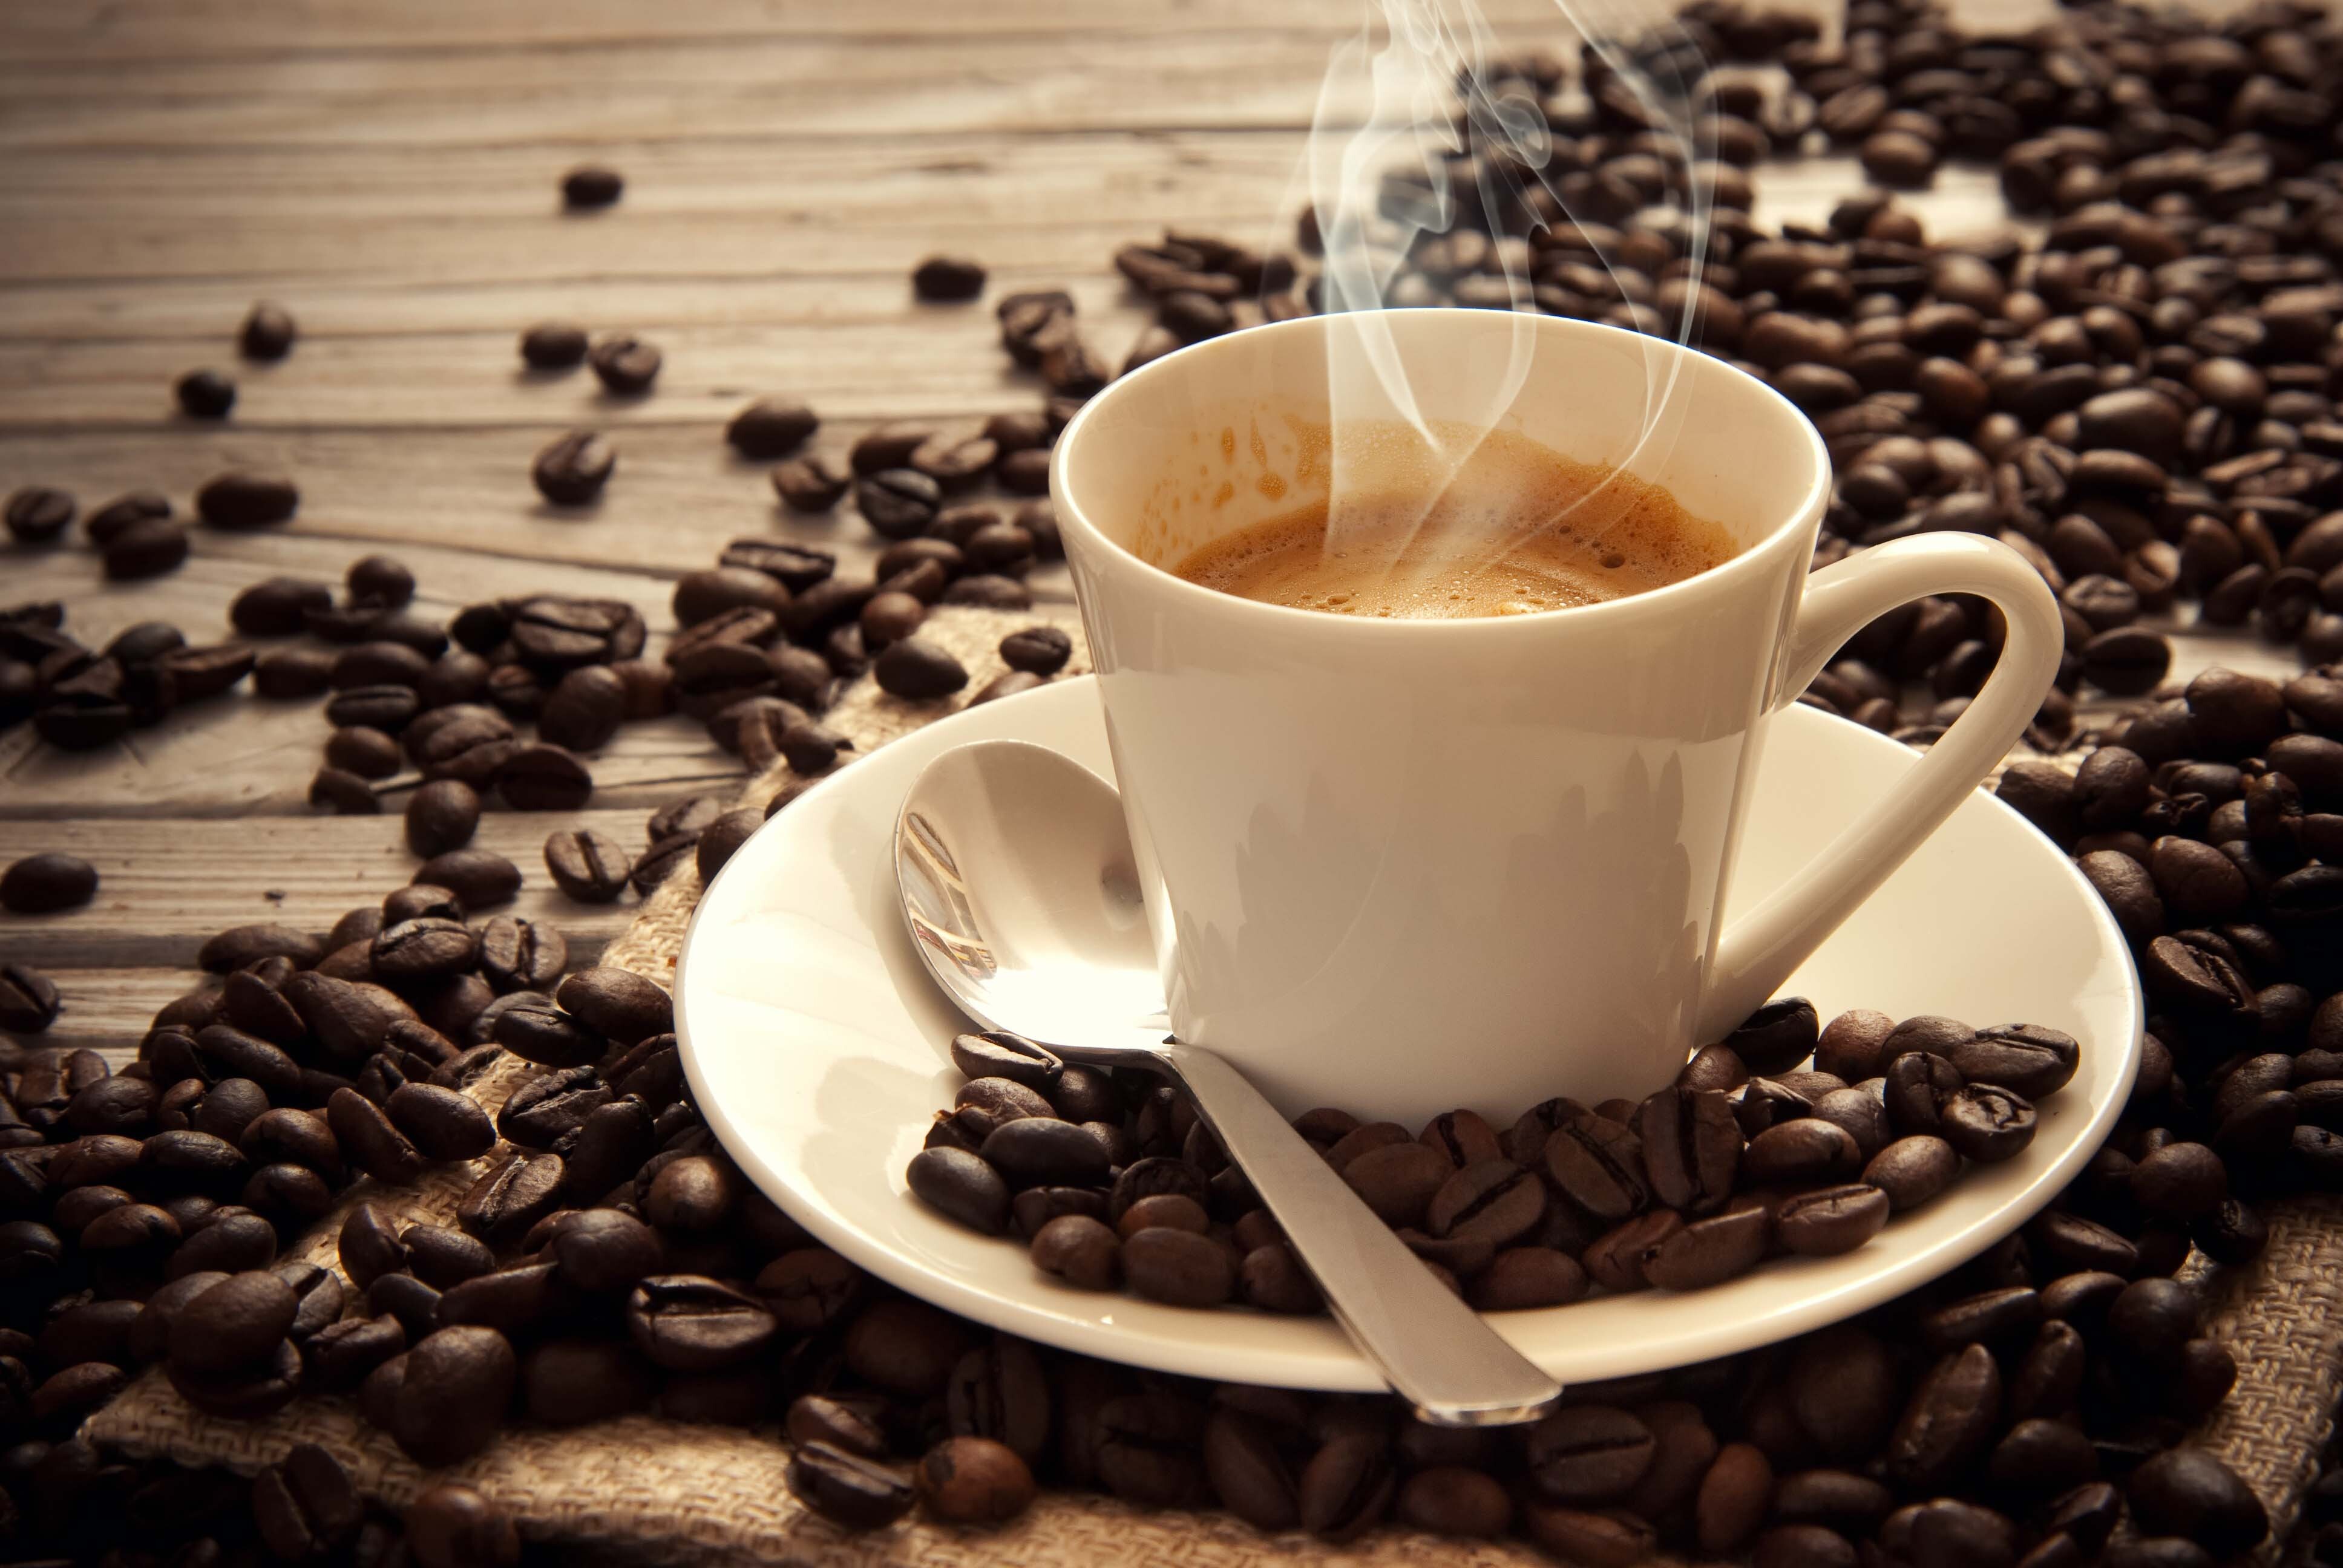  Agroalimentaire: Le café trouve sa place dans des préparations salées 